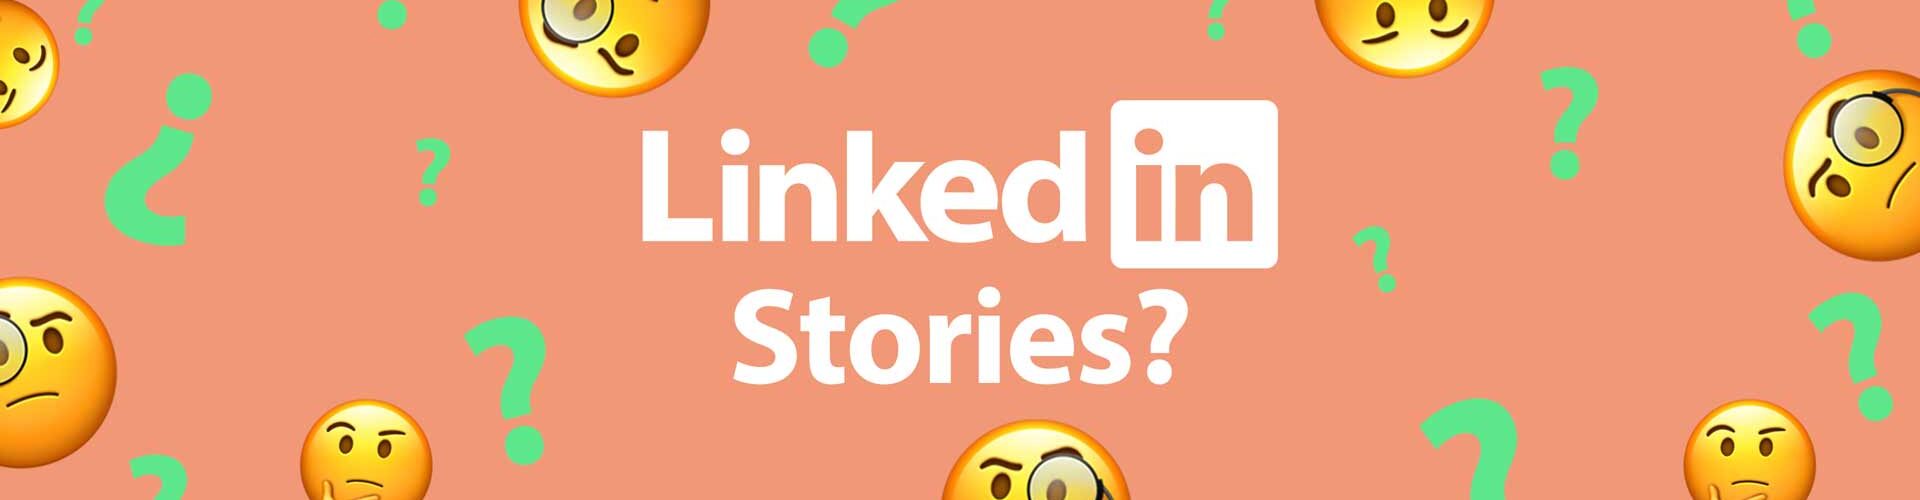 'LinkedIn Stories; hoe hebben ze het kunnen verzinnen?'